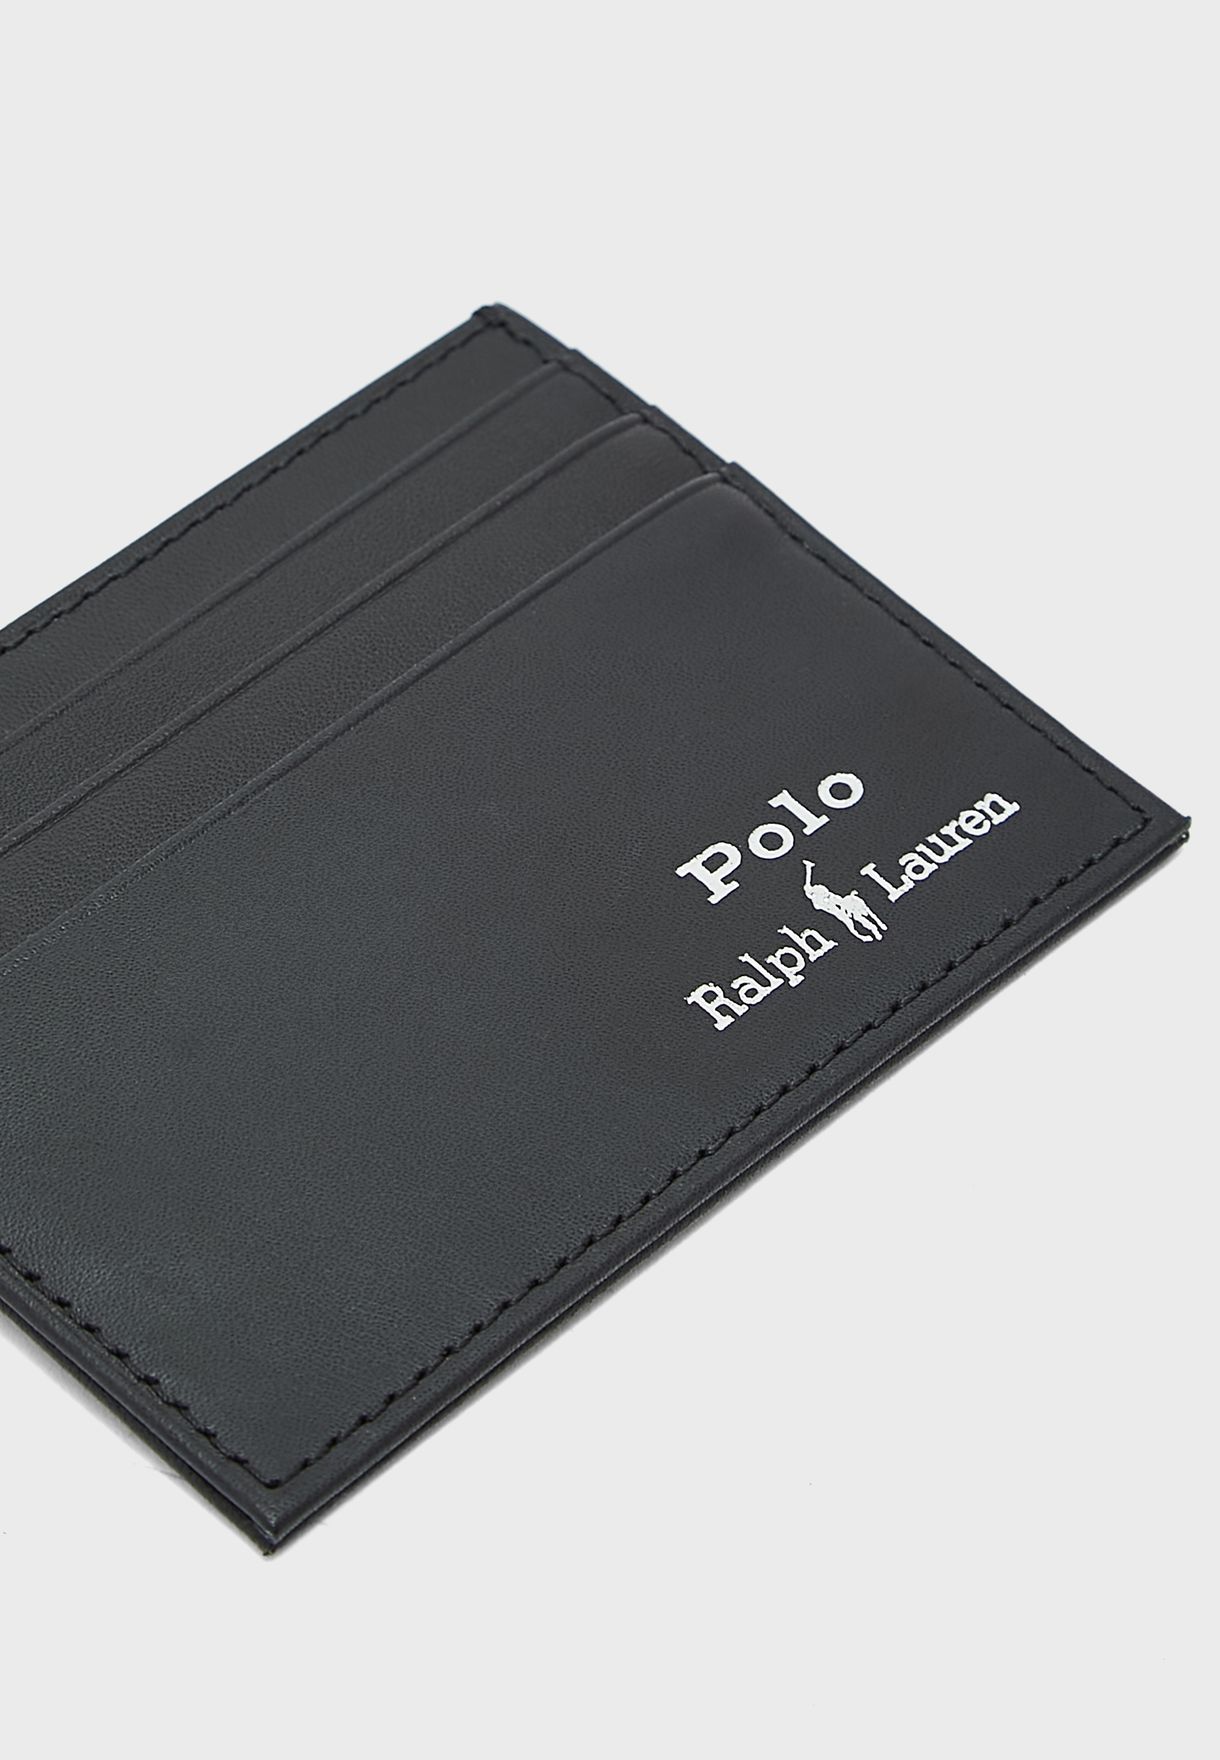 Buy Polo Ralph Lauren black Gift Box for Men in Dubai, Abu Dhabi